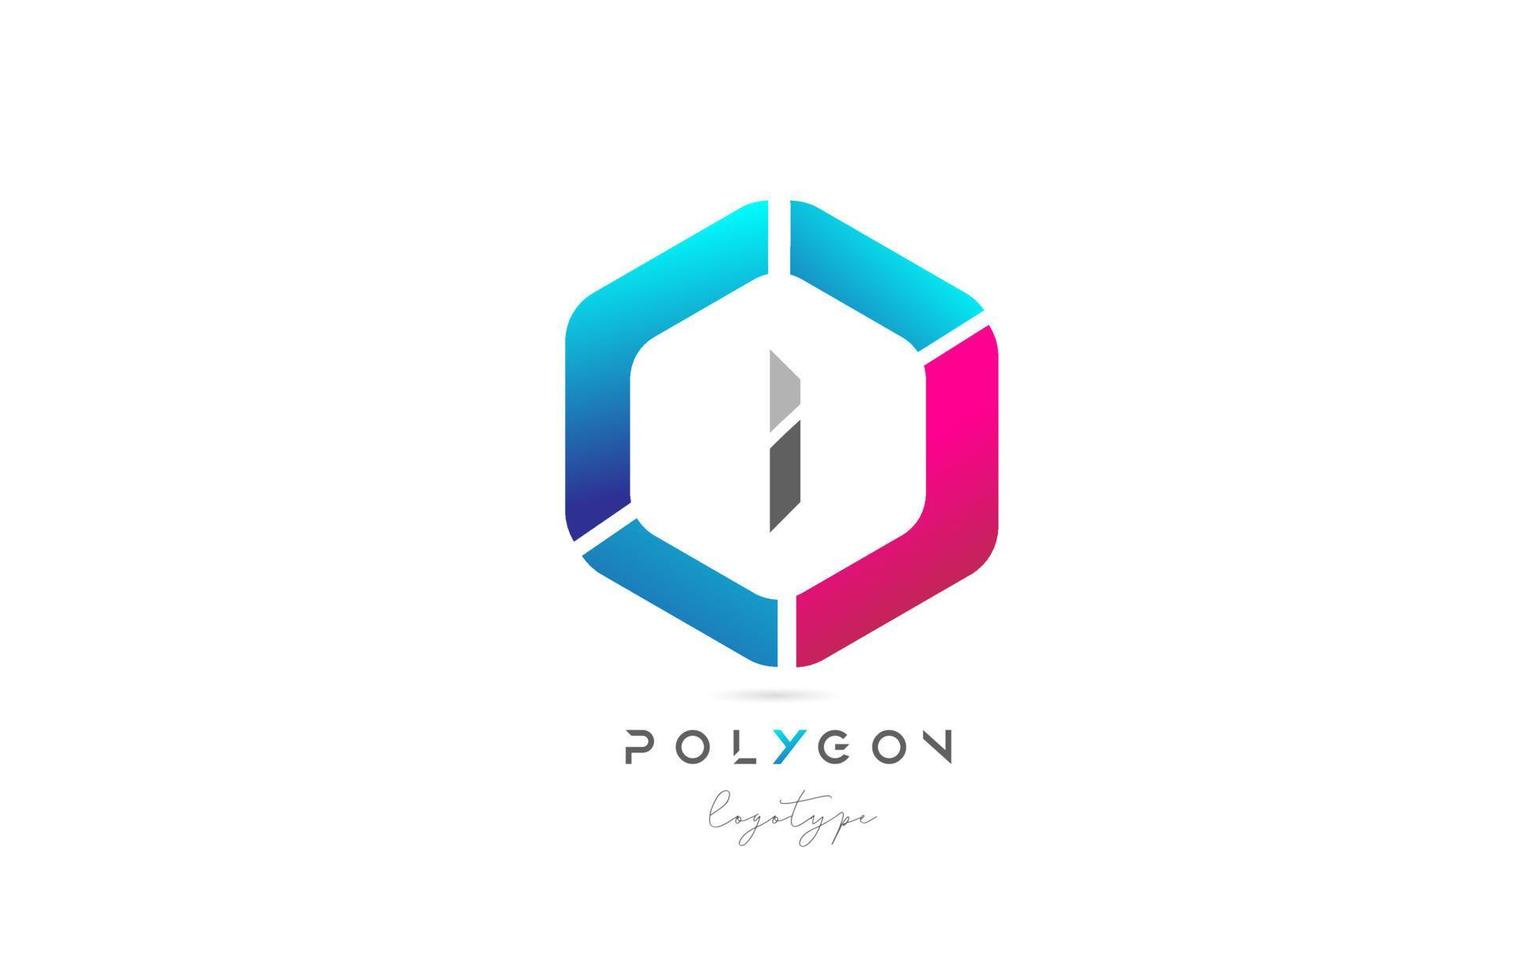 je polygone rose bleu icône alphabet lettre création de logo pour entreprise et société vecteur